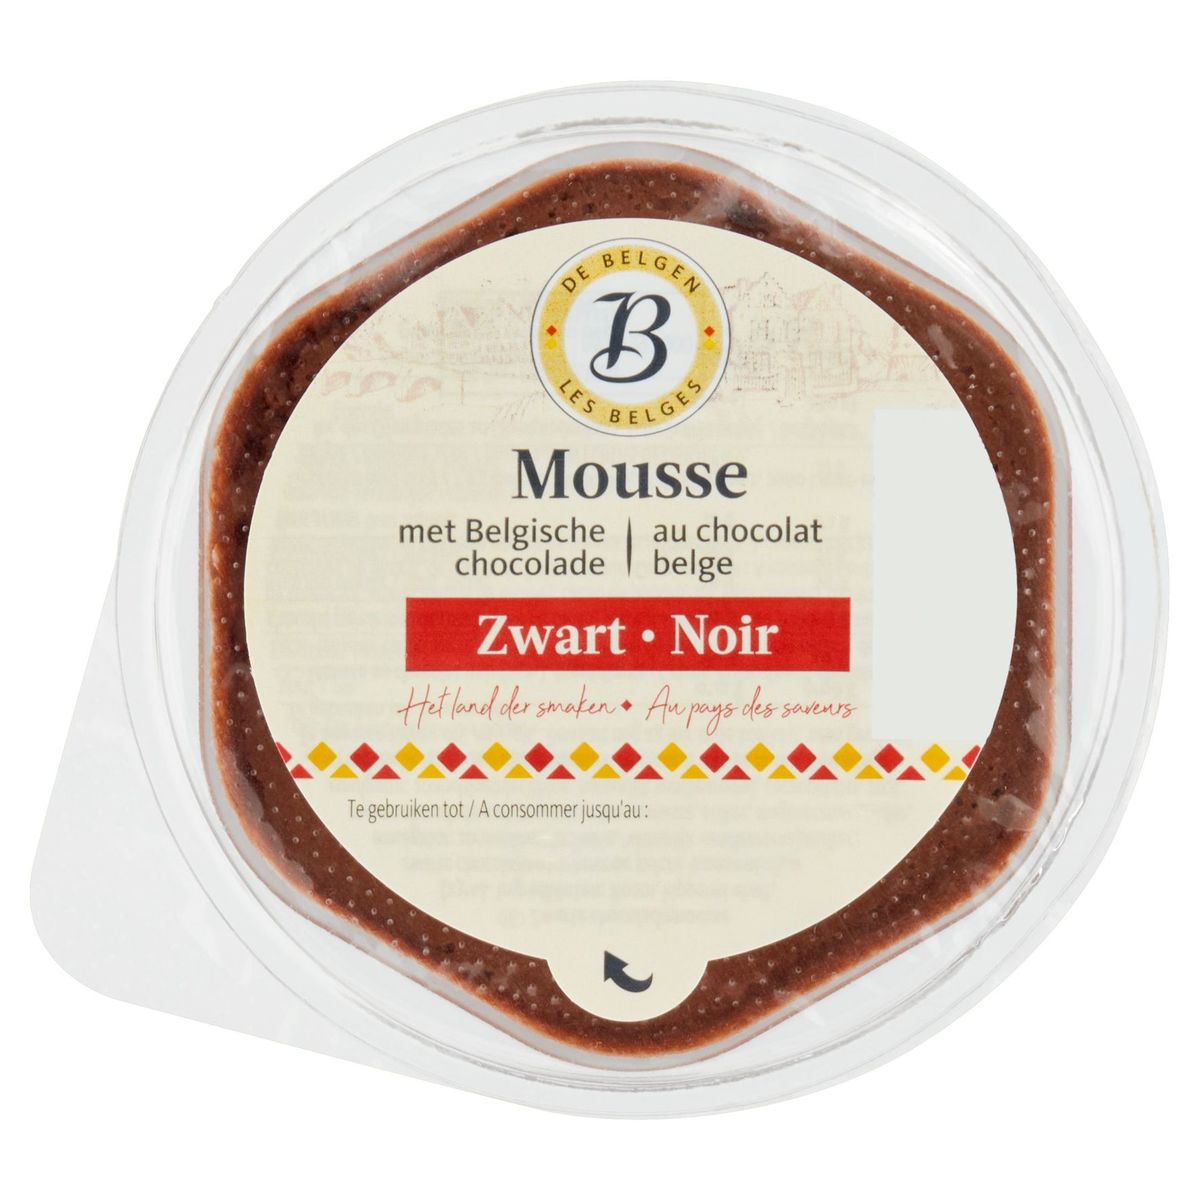 Les Belges Mousse au Chocolat Belge Noir 75 g